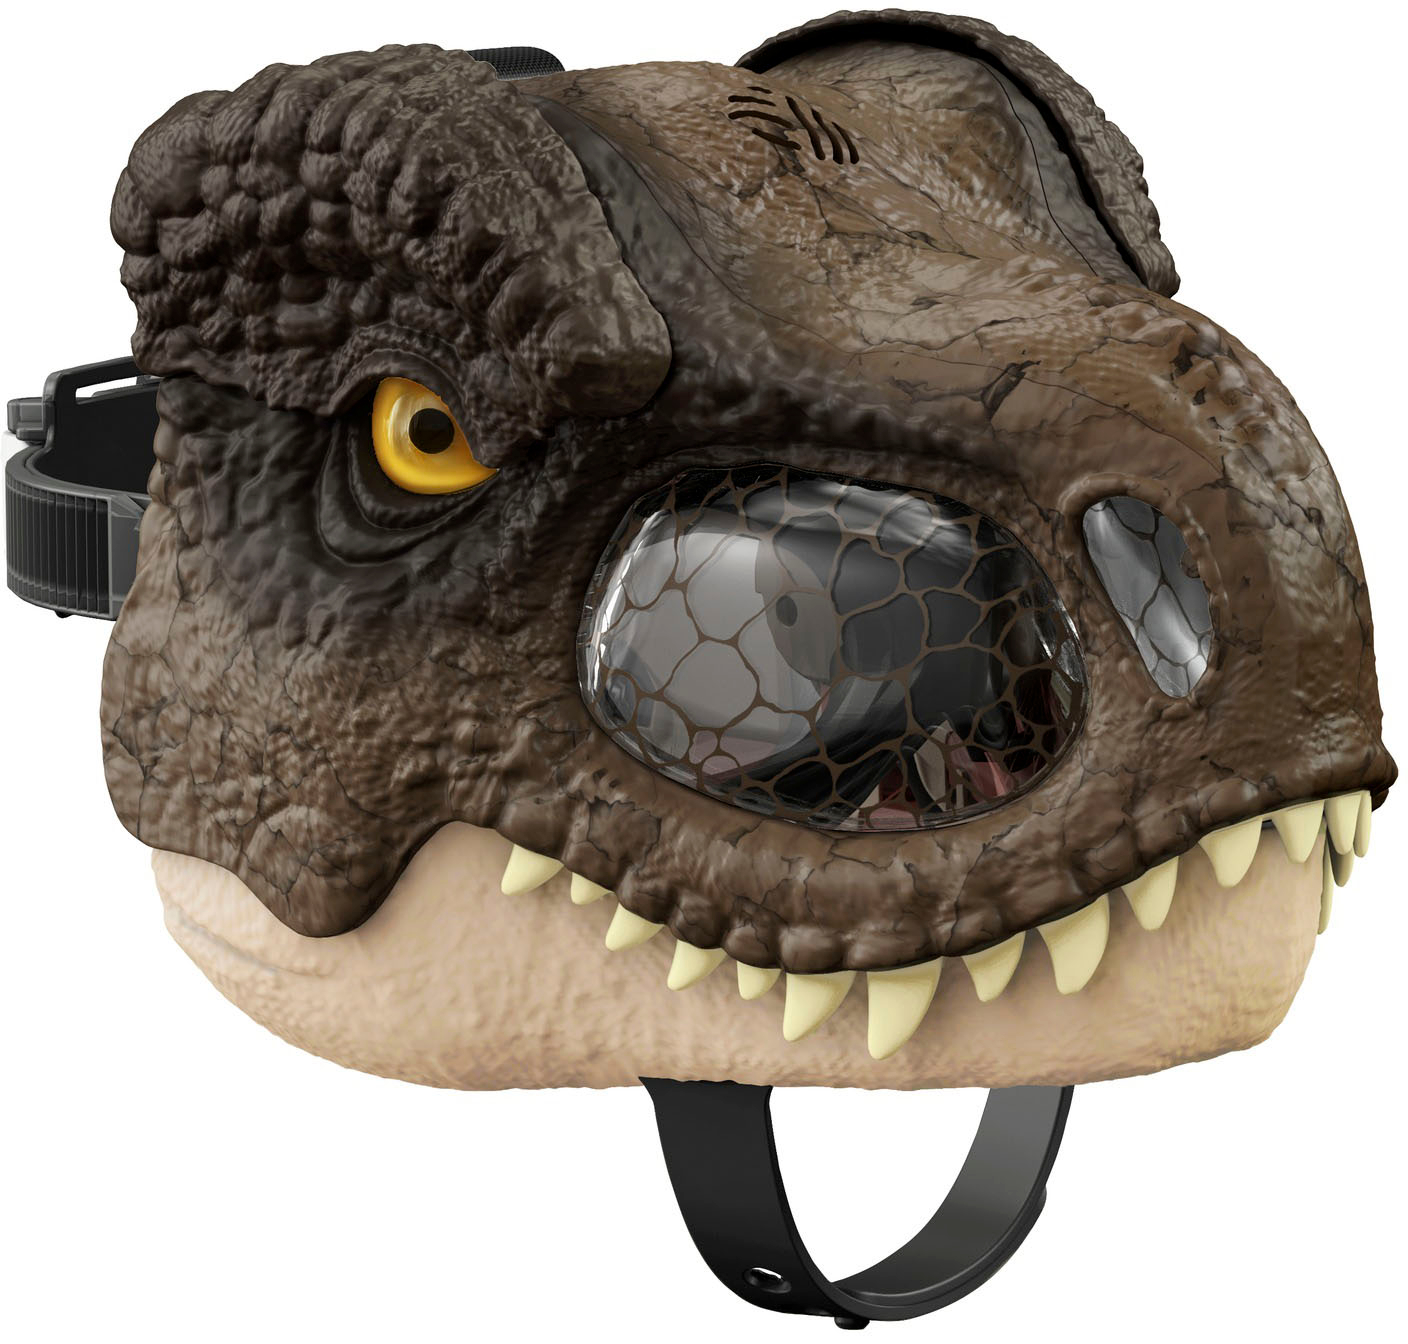 Jurassic World T-Rex Chomp 'N Roar Mask GWD71 - Best Buy